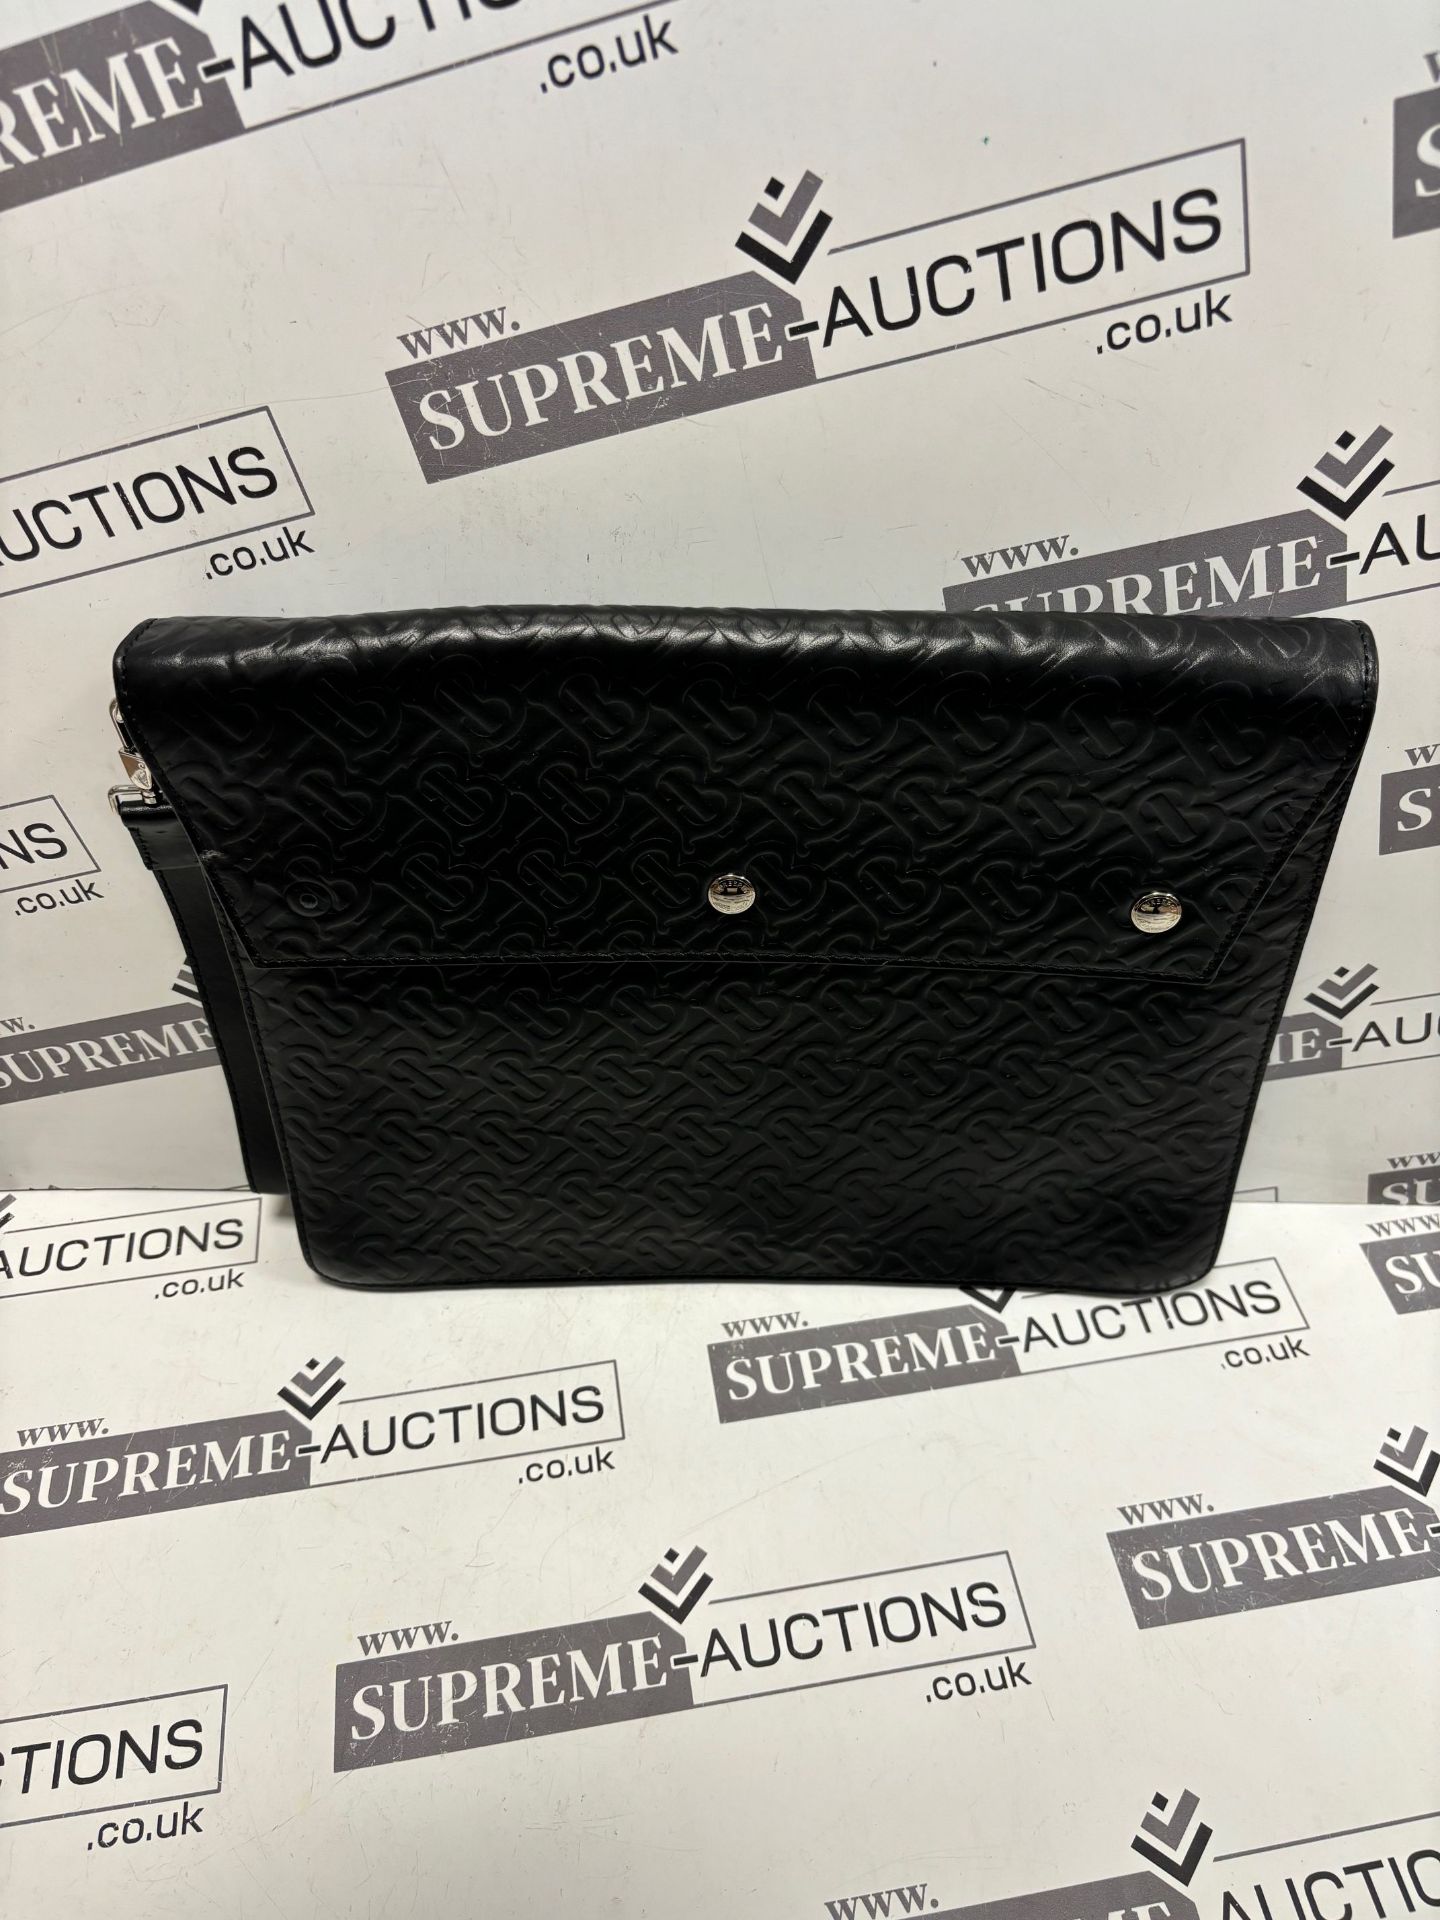 (No Vat) Burberry Envelope clutch, TB embossed leather, Black colour approx 27x35cm. - Bild 2 aus 7